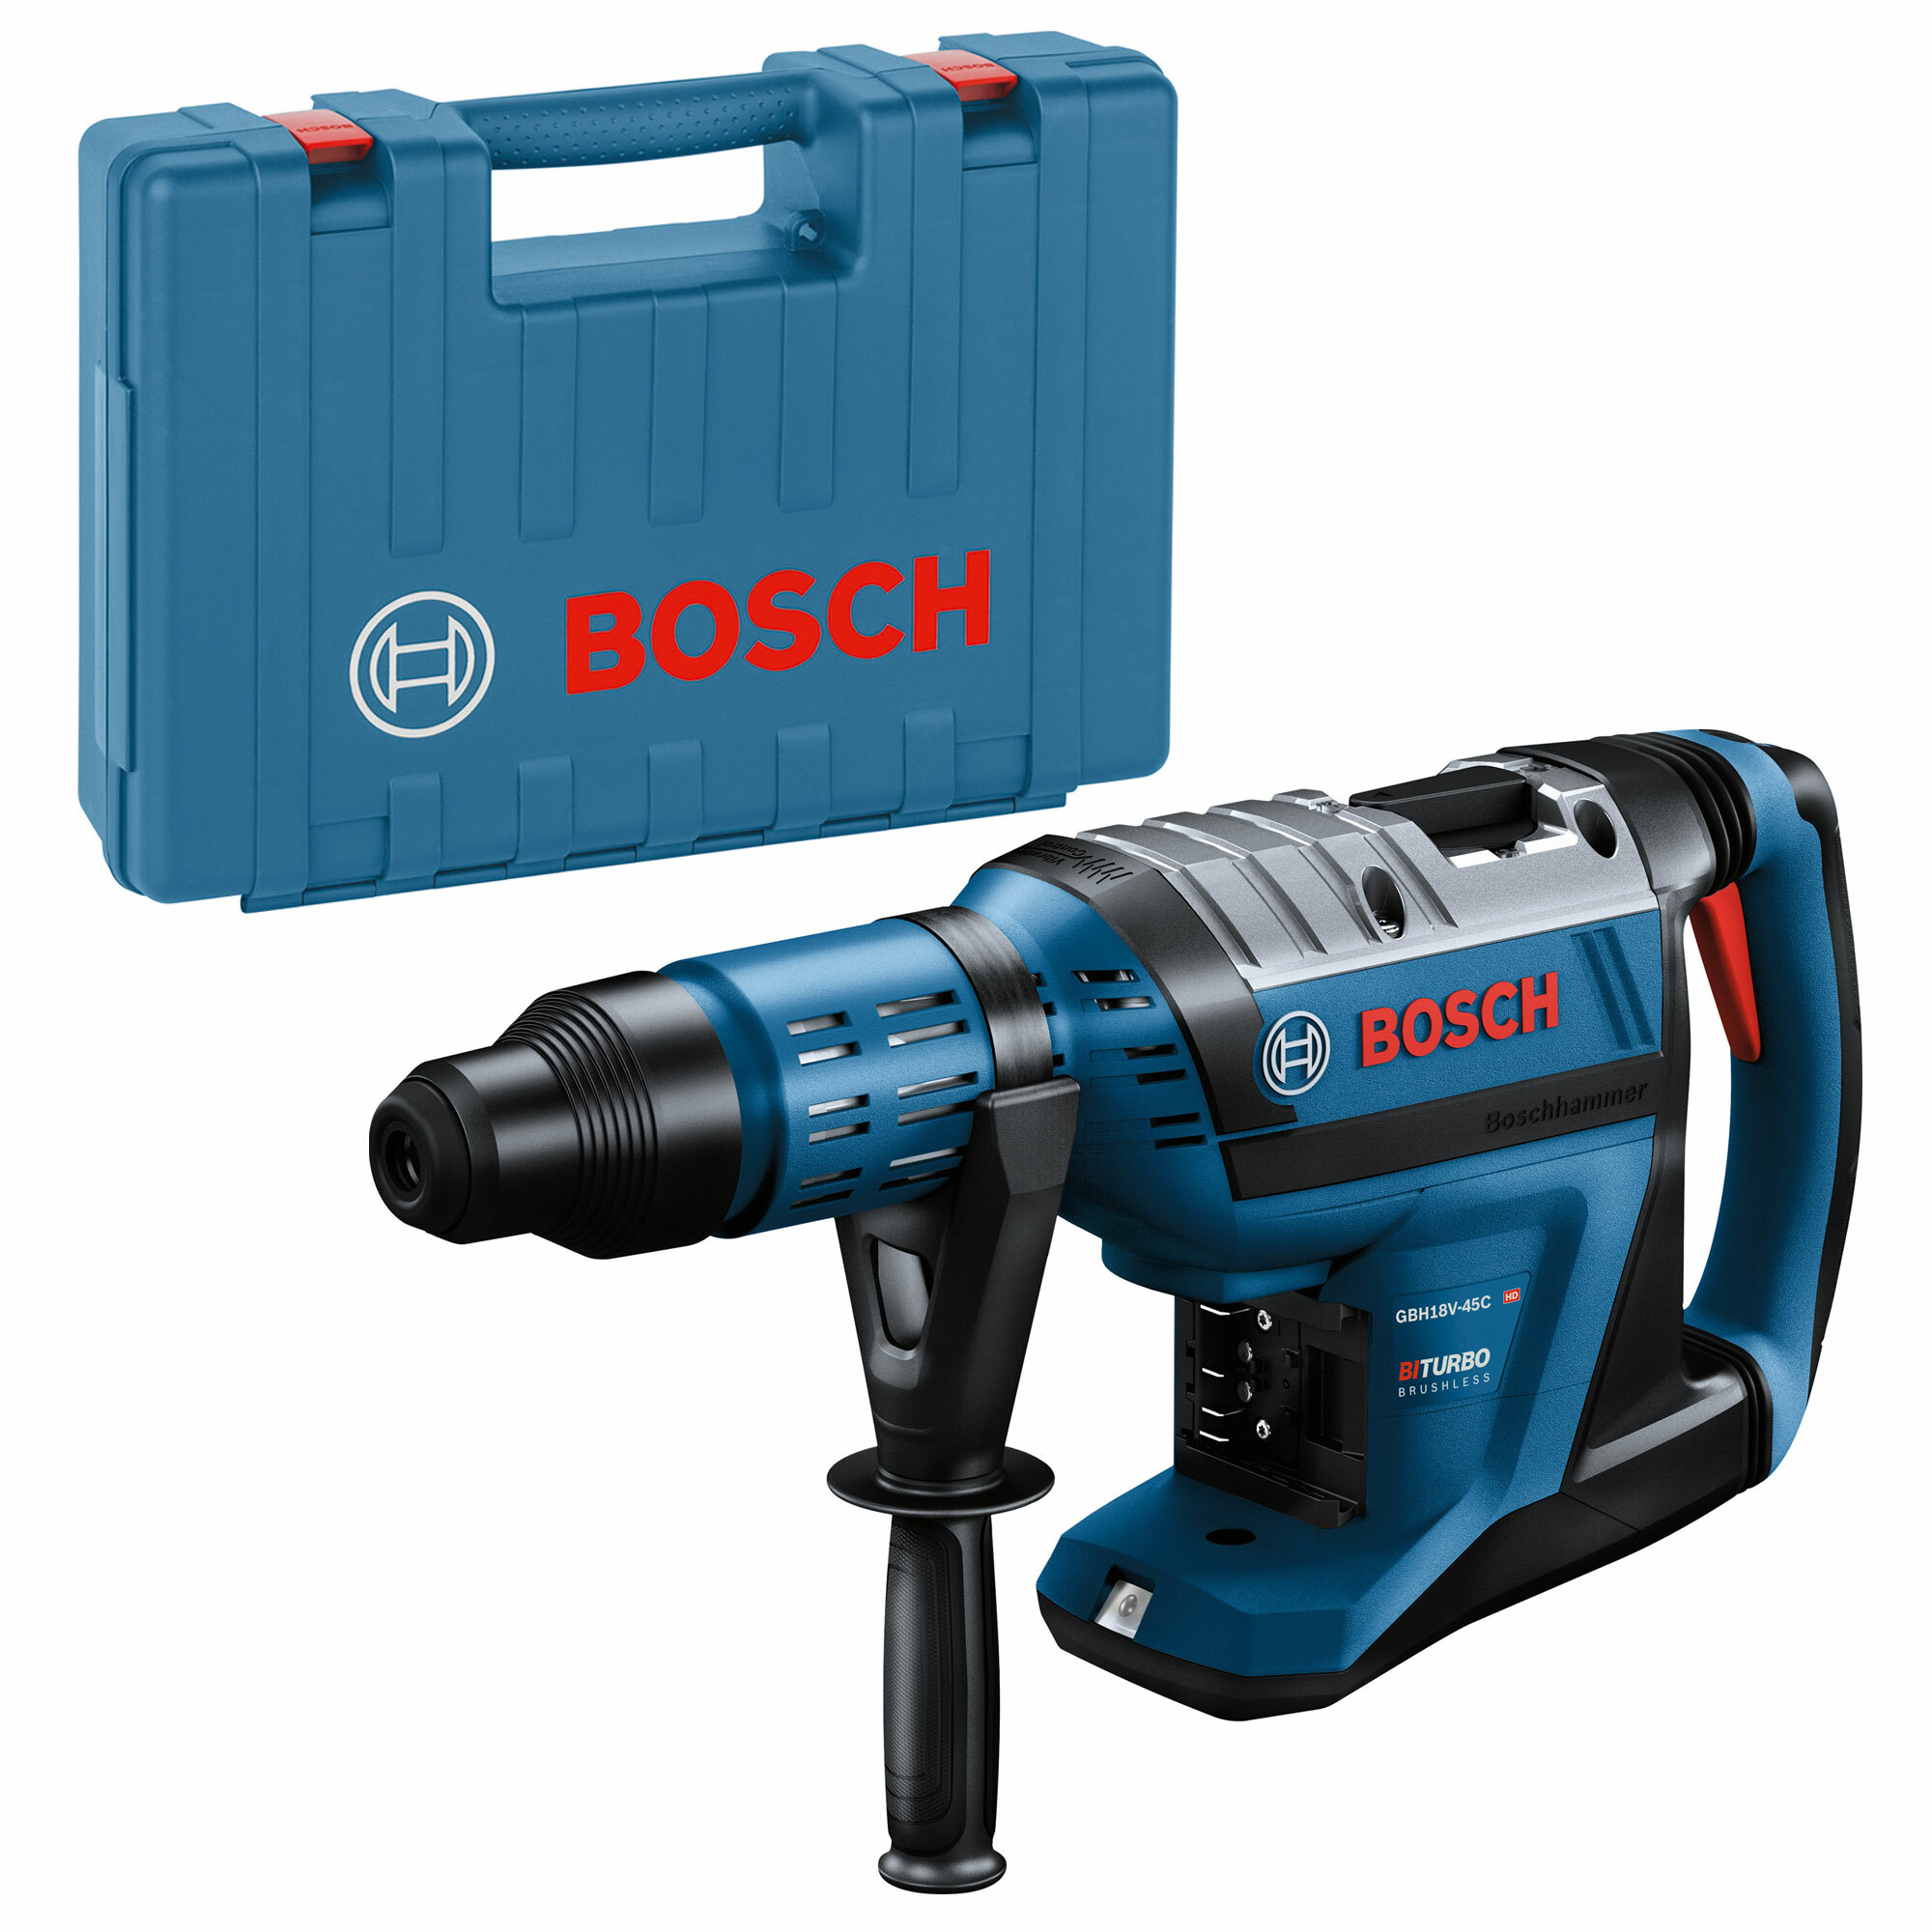 Bosch GBH 18 V 45 C